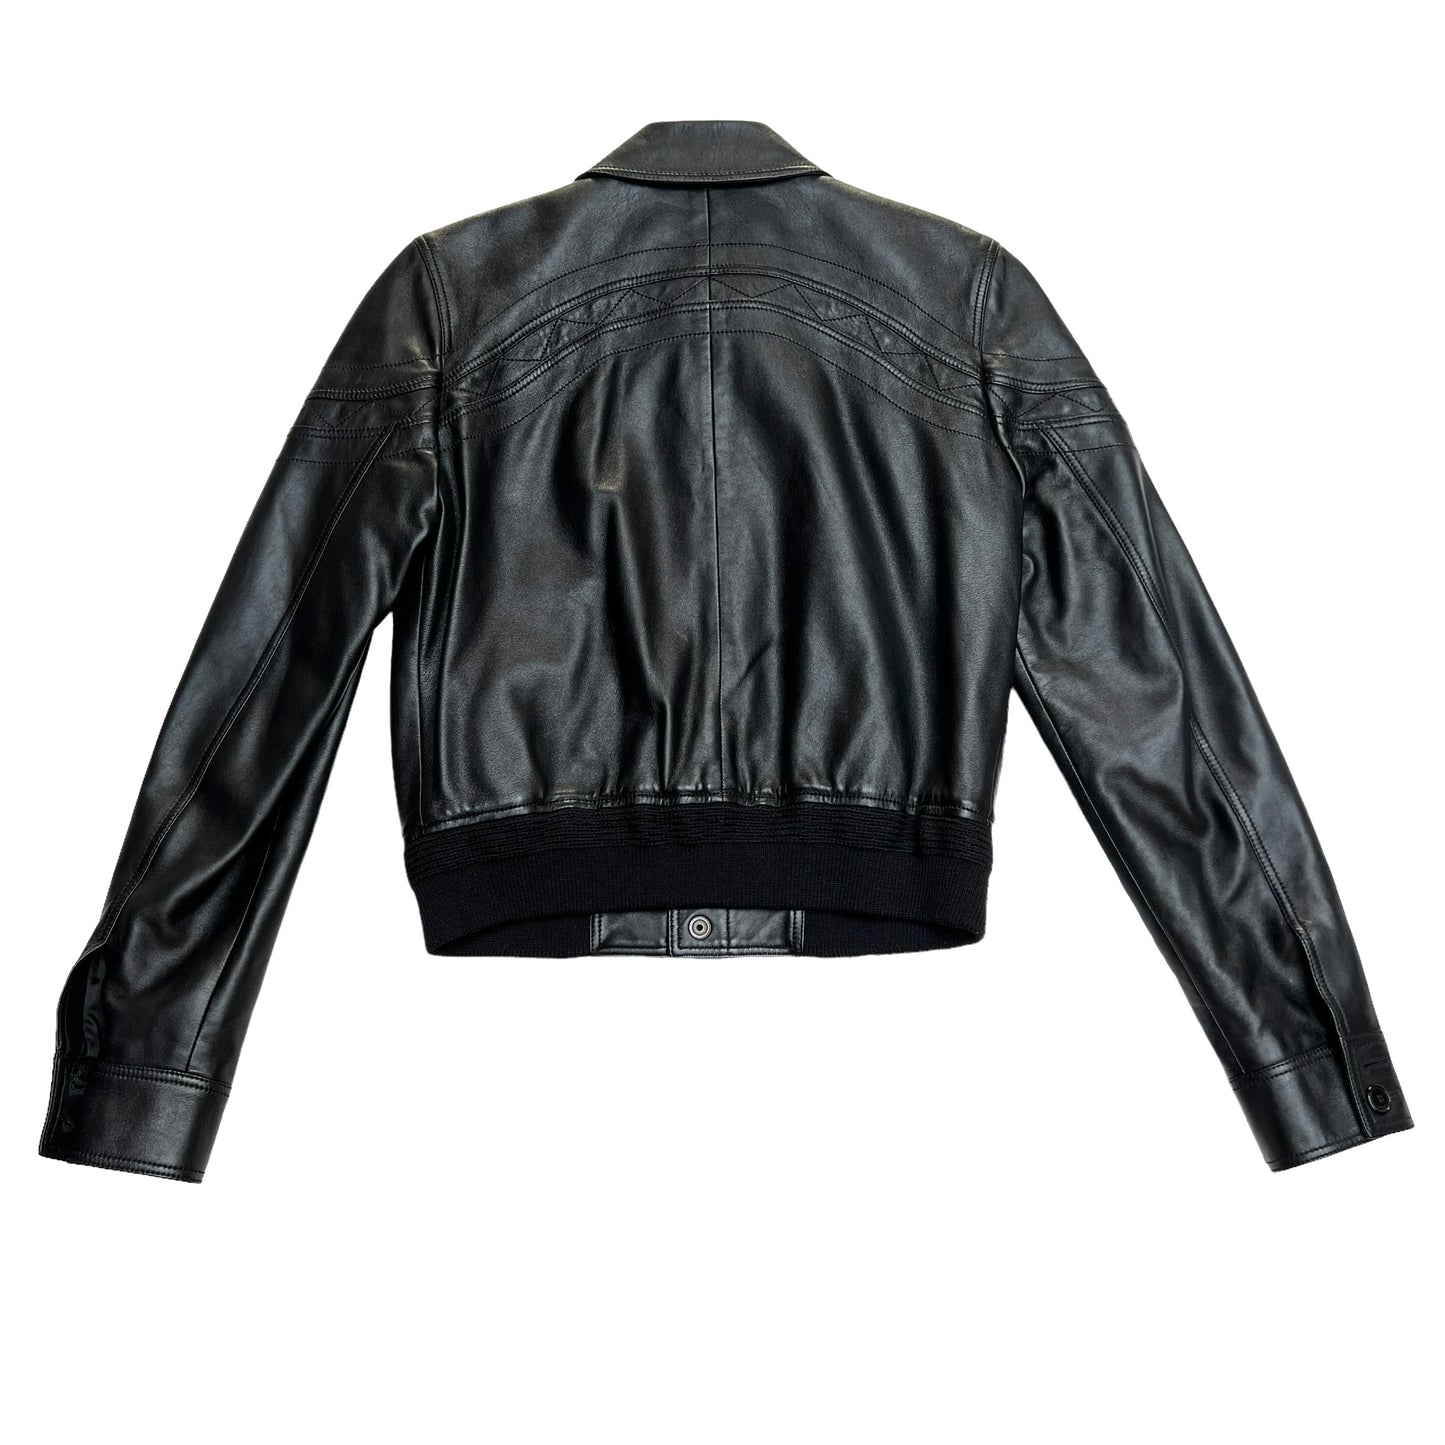 2018 Black Leather Bomber Jacket - S